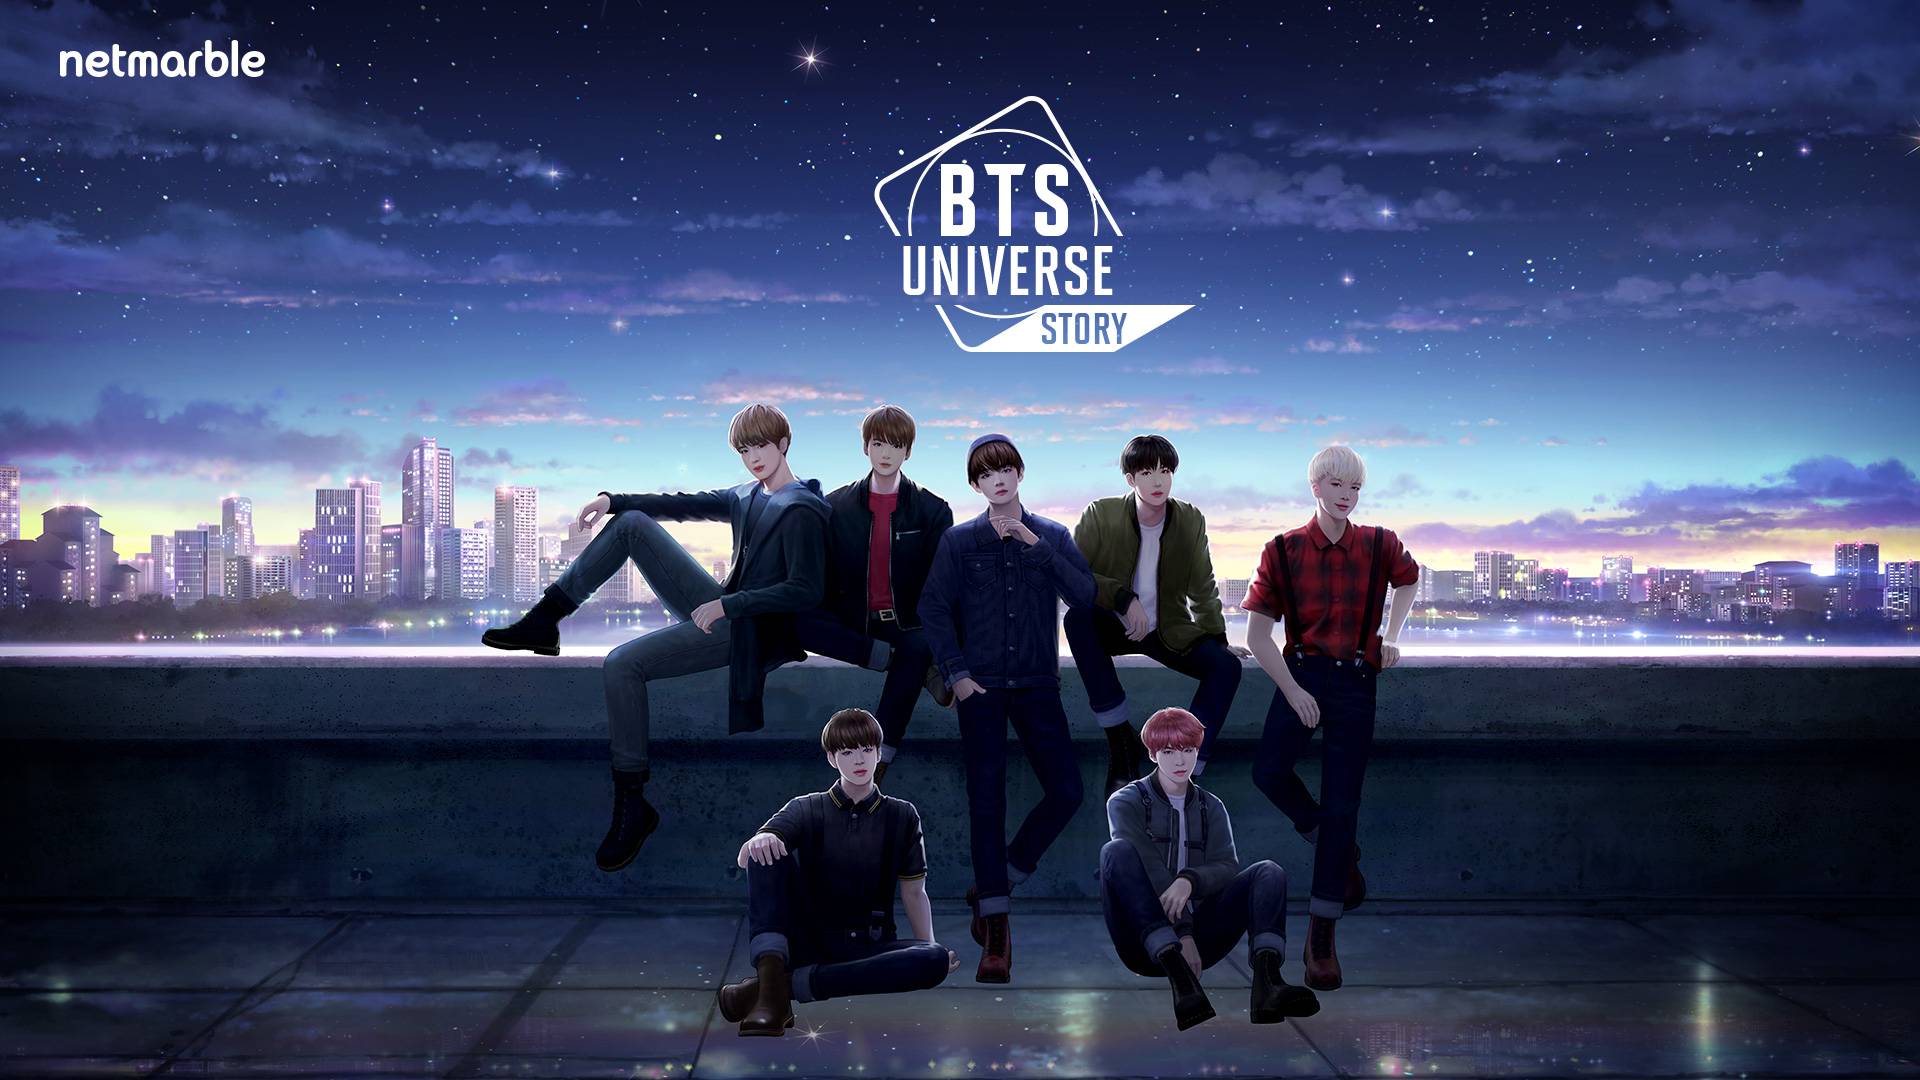 網石全新BTS主題手機遊戲《BTS Universe Story》  8月18日展開事前預約